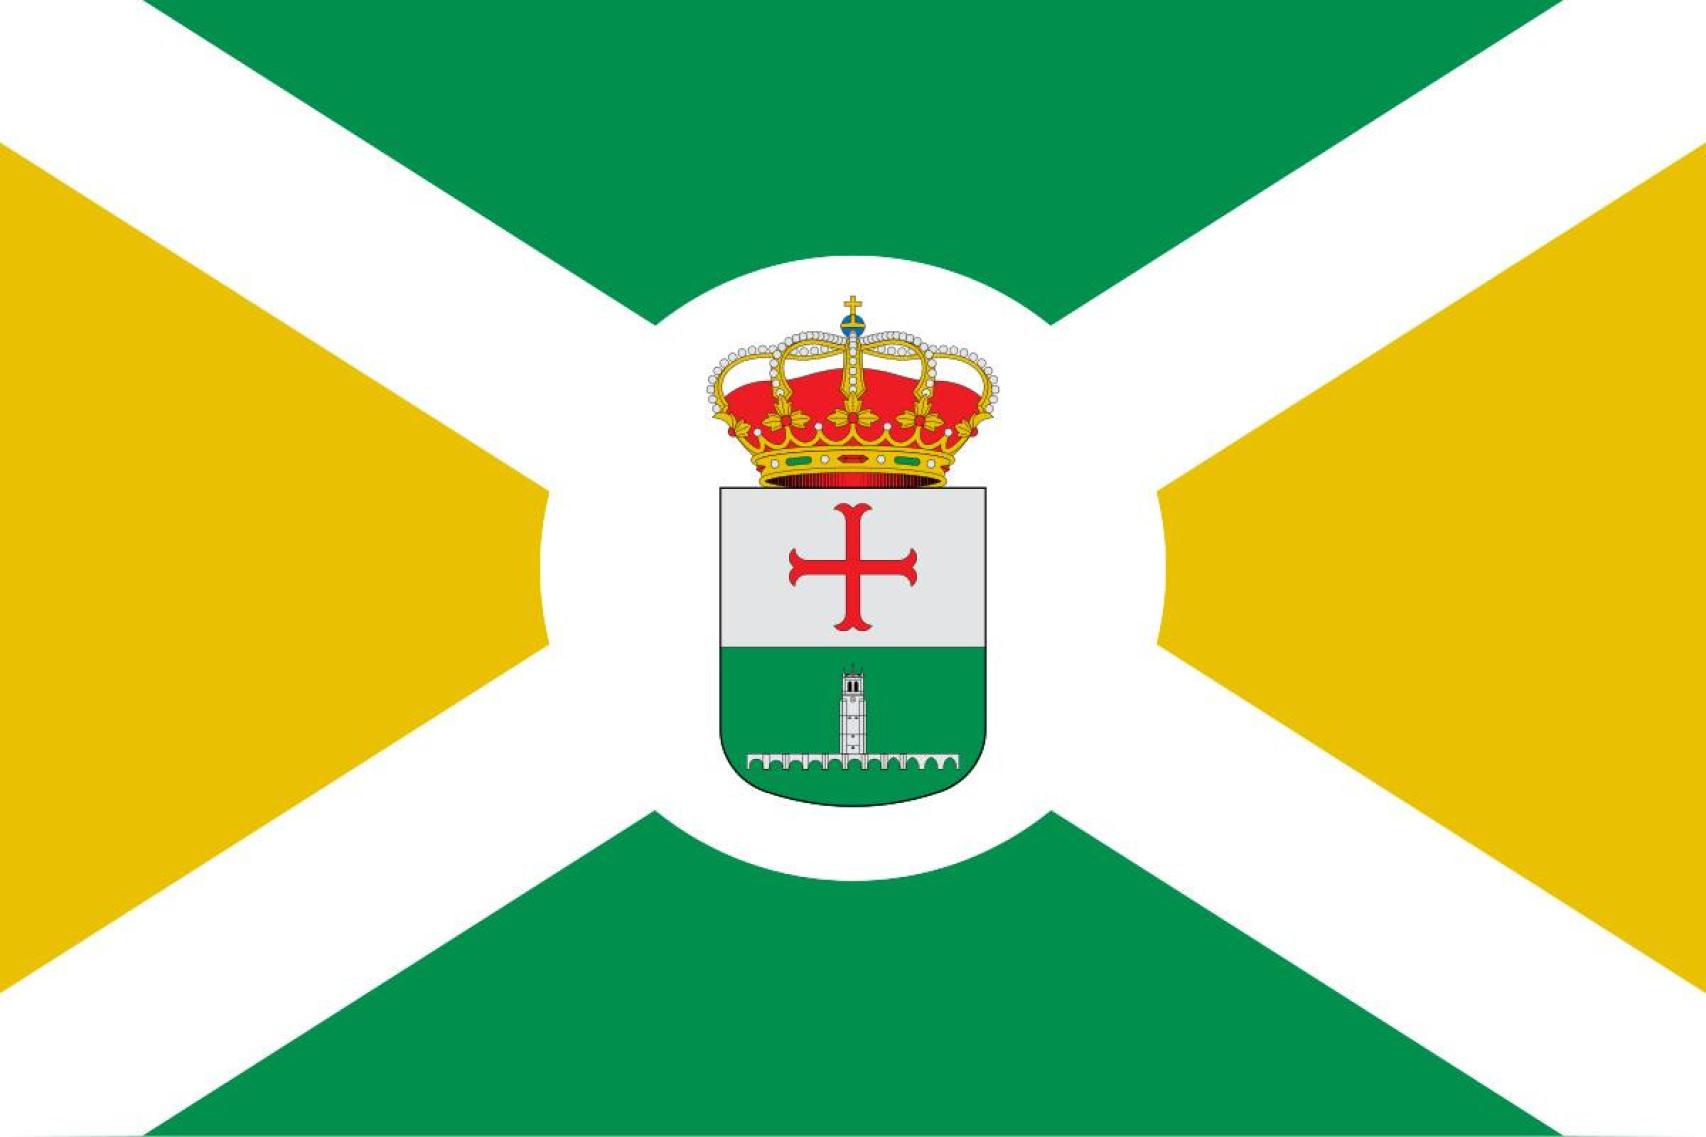 La nueva bandera de Villamuriel de Cerrato